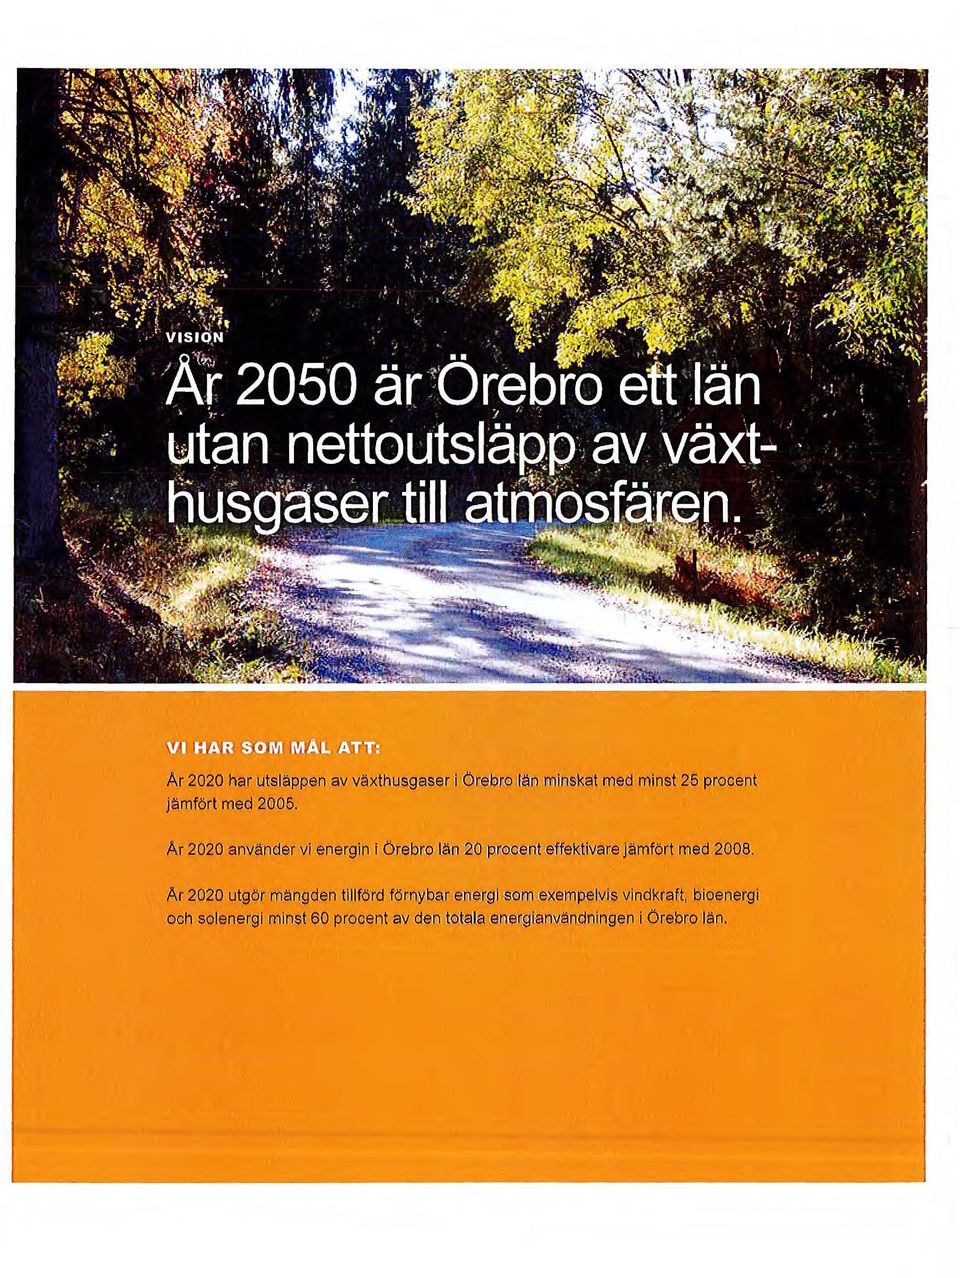 Ar 2020 använder vi energin i Örebro län 2(i) rirnooemt e~fektivare jämfört med 2008.